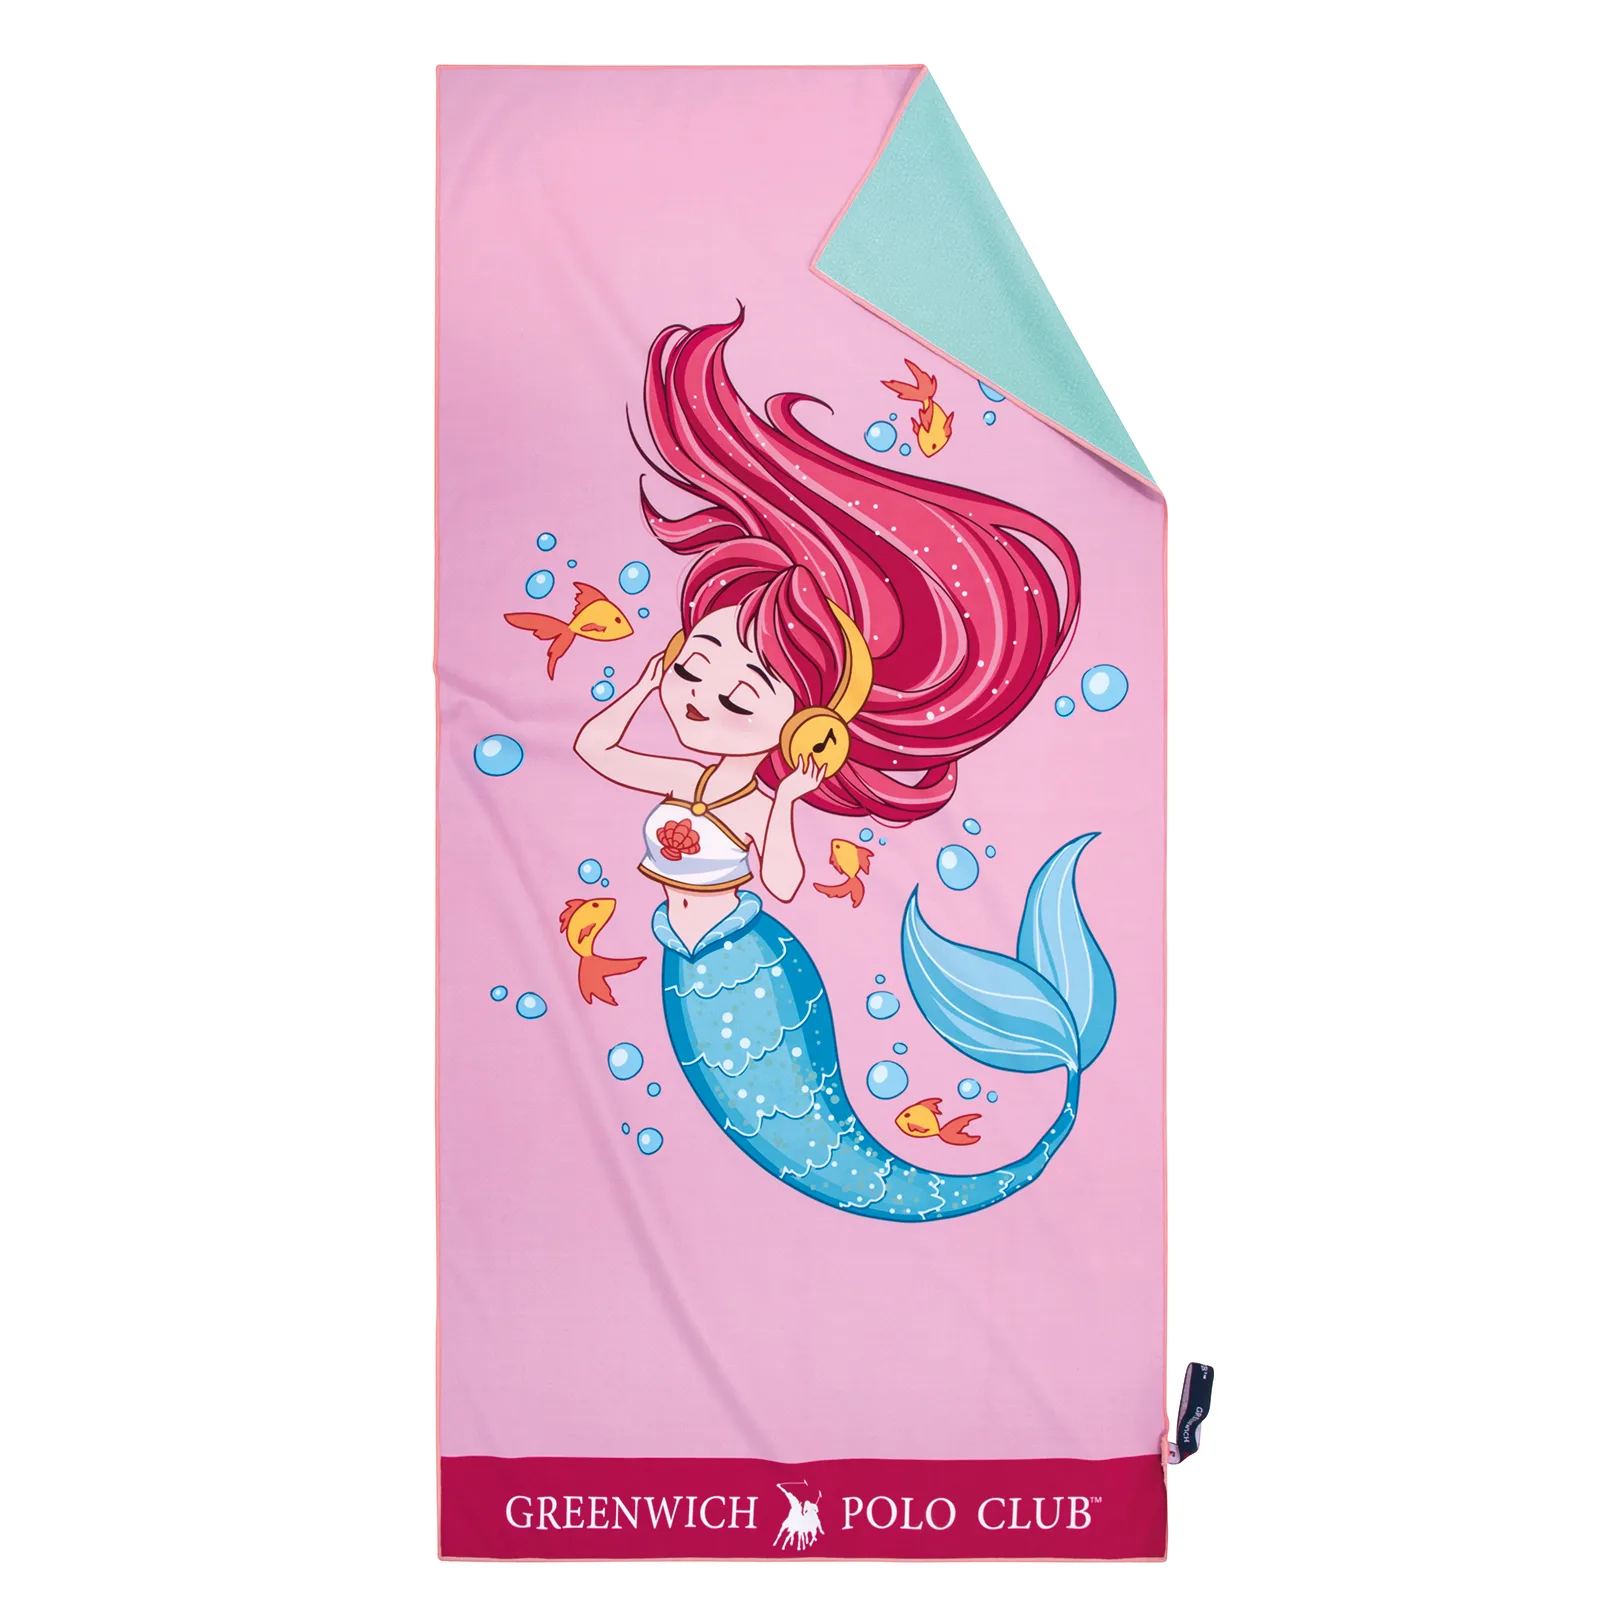 Πετσέτα Θαλάσσης Microfiber 70×140εκ. Beach Towels 3883 Ροζ-Φούξια-Μπλε Greenwich Polo Club Junior (Ύφασμα: Microfiber, Χρώμα: Ροζ) – Greenwich Polo Club – 267701403883